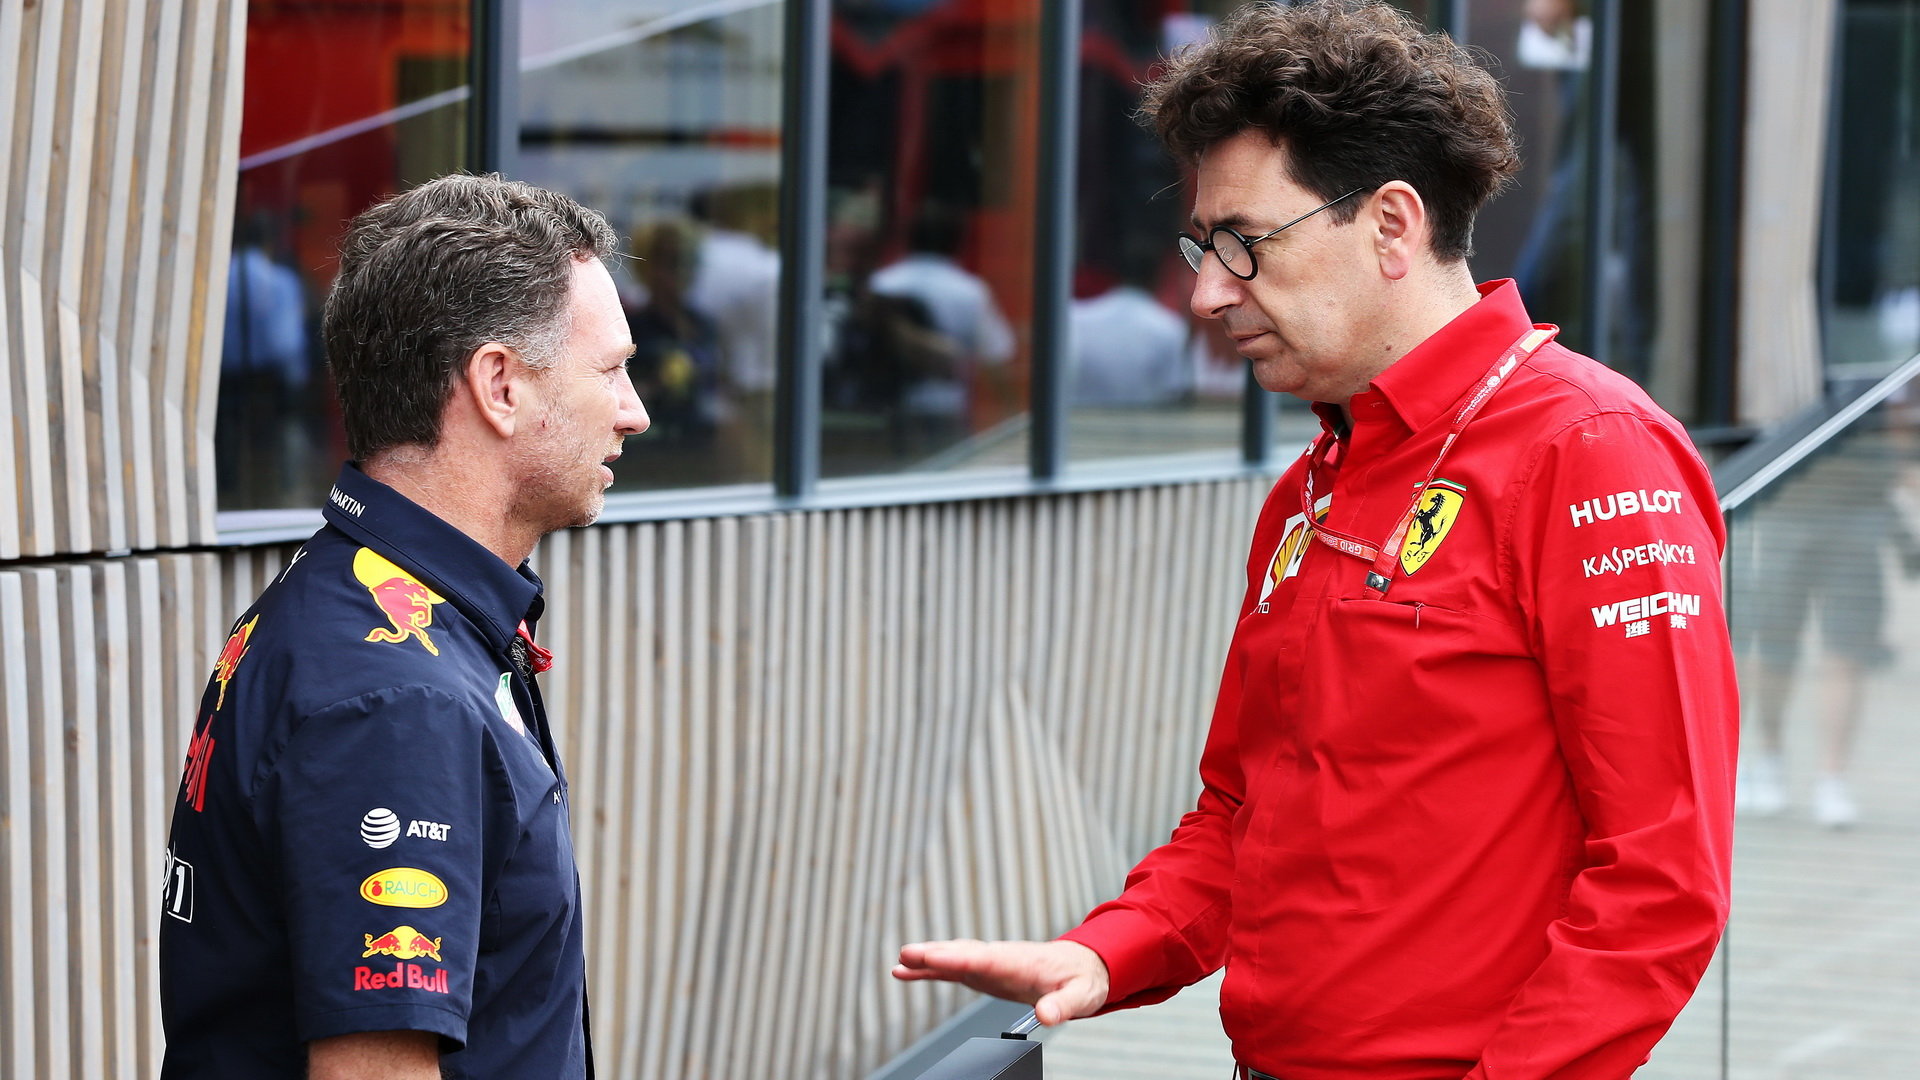 Že by se u Red Bullu tak trochu inspirovali u Ferrari?